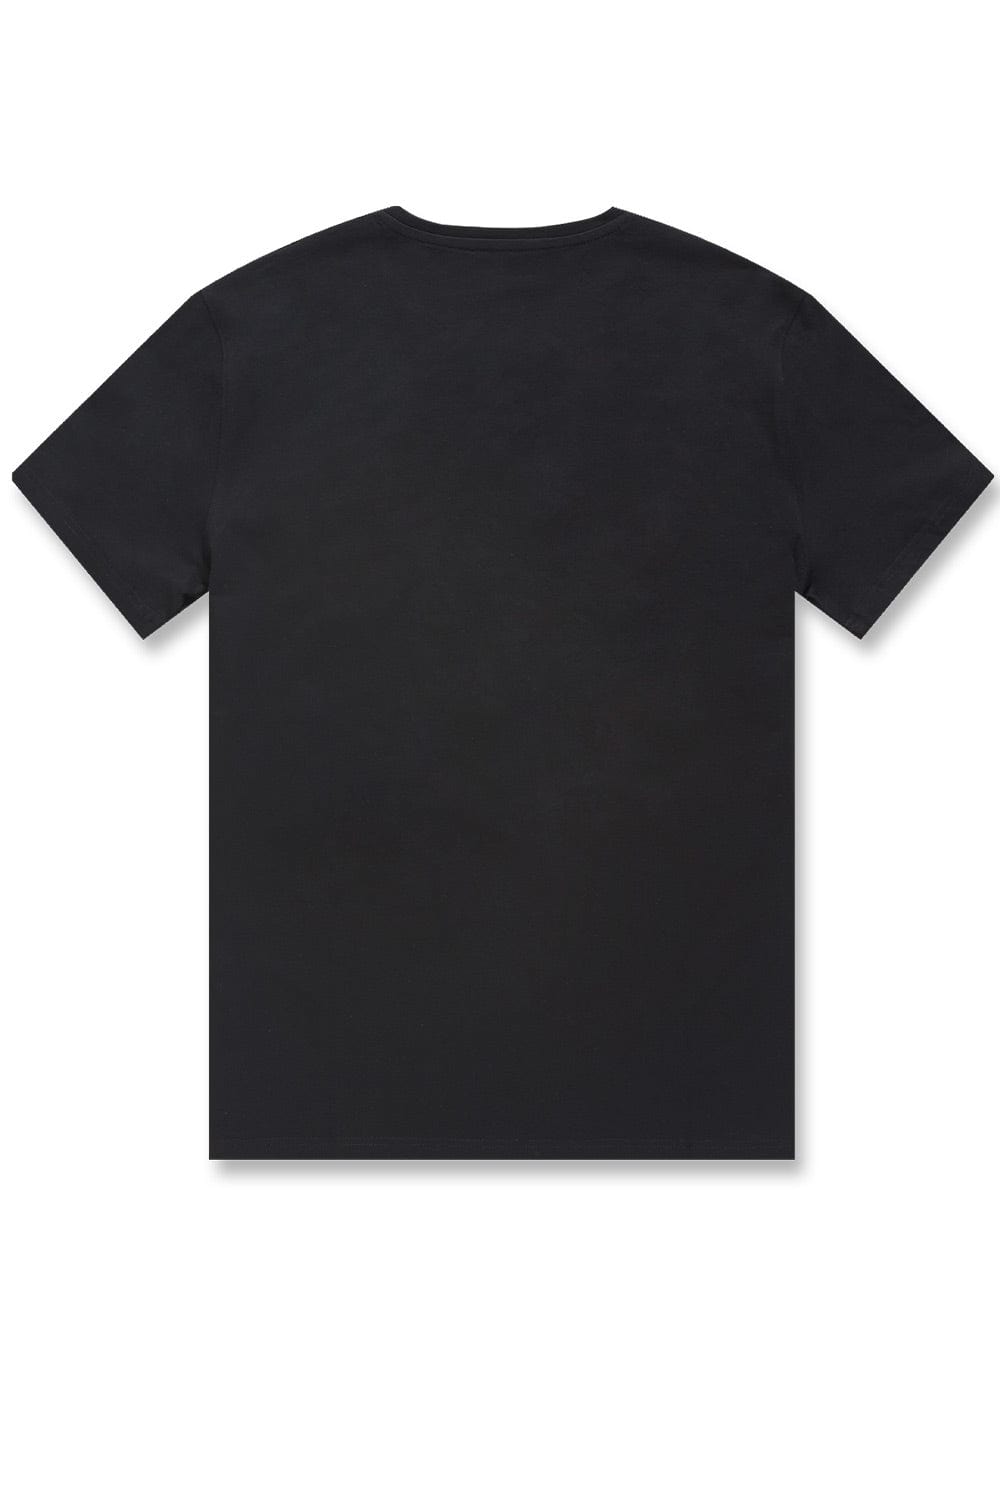 Les Paradis T-Shirt (Black)